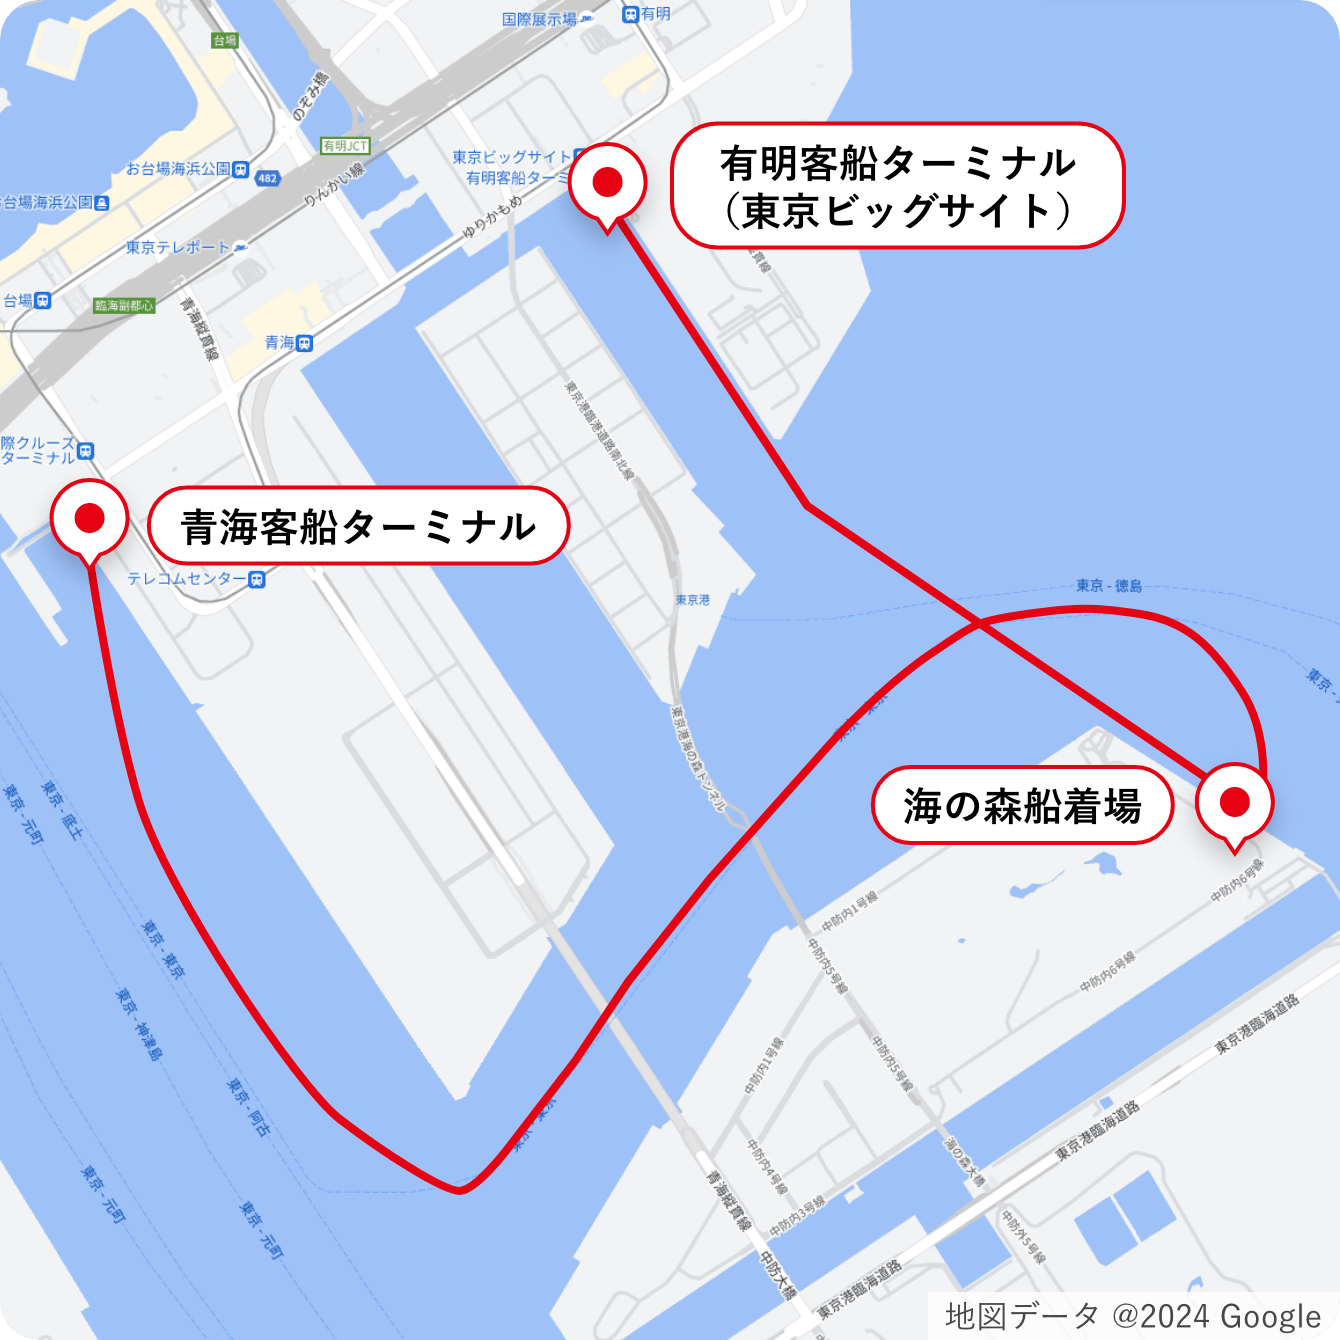 「ハイドロびんご」 マップ image